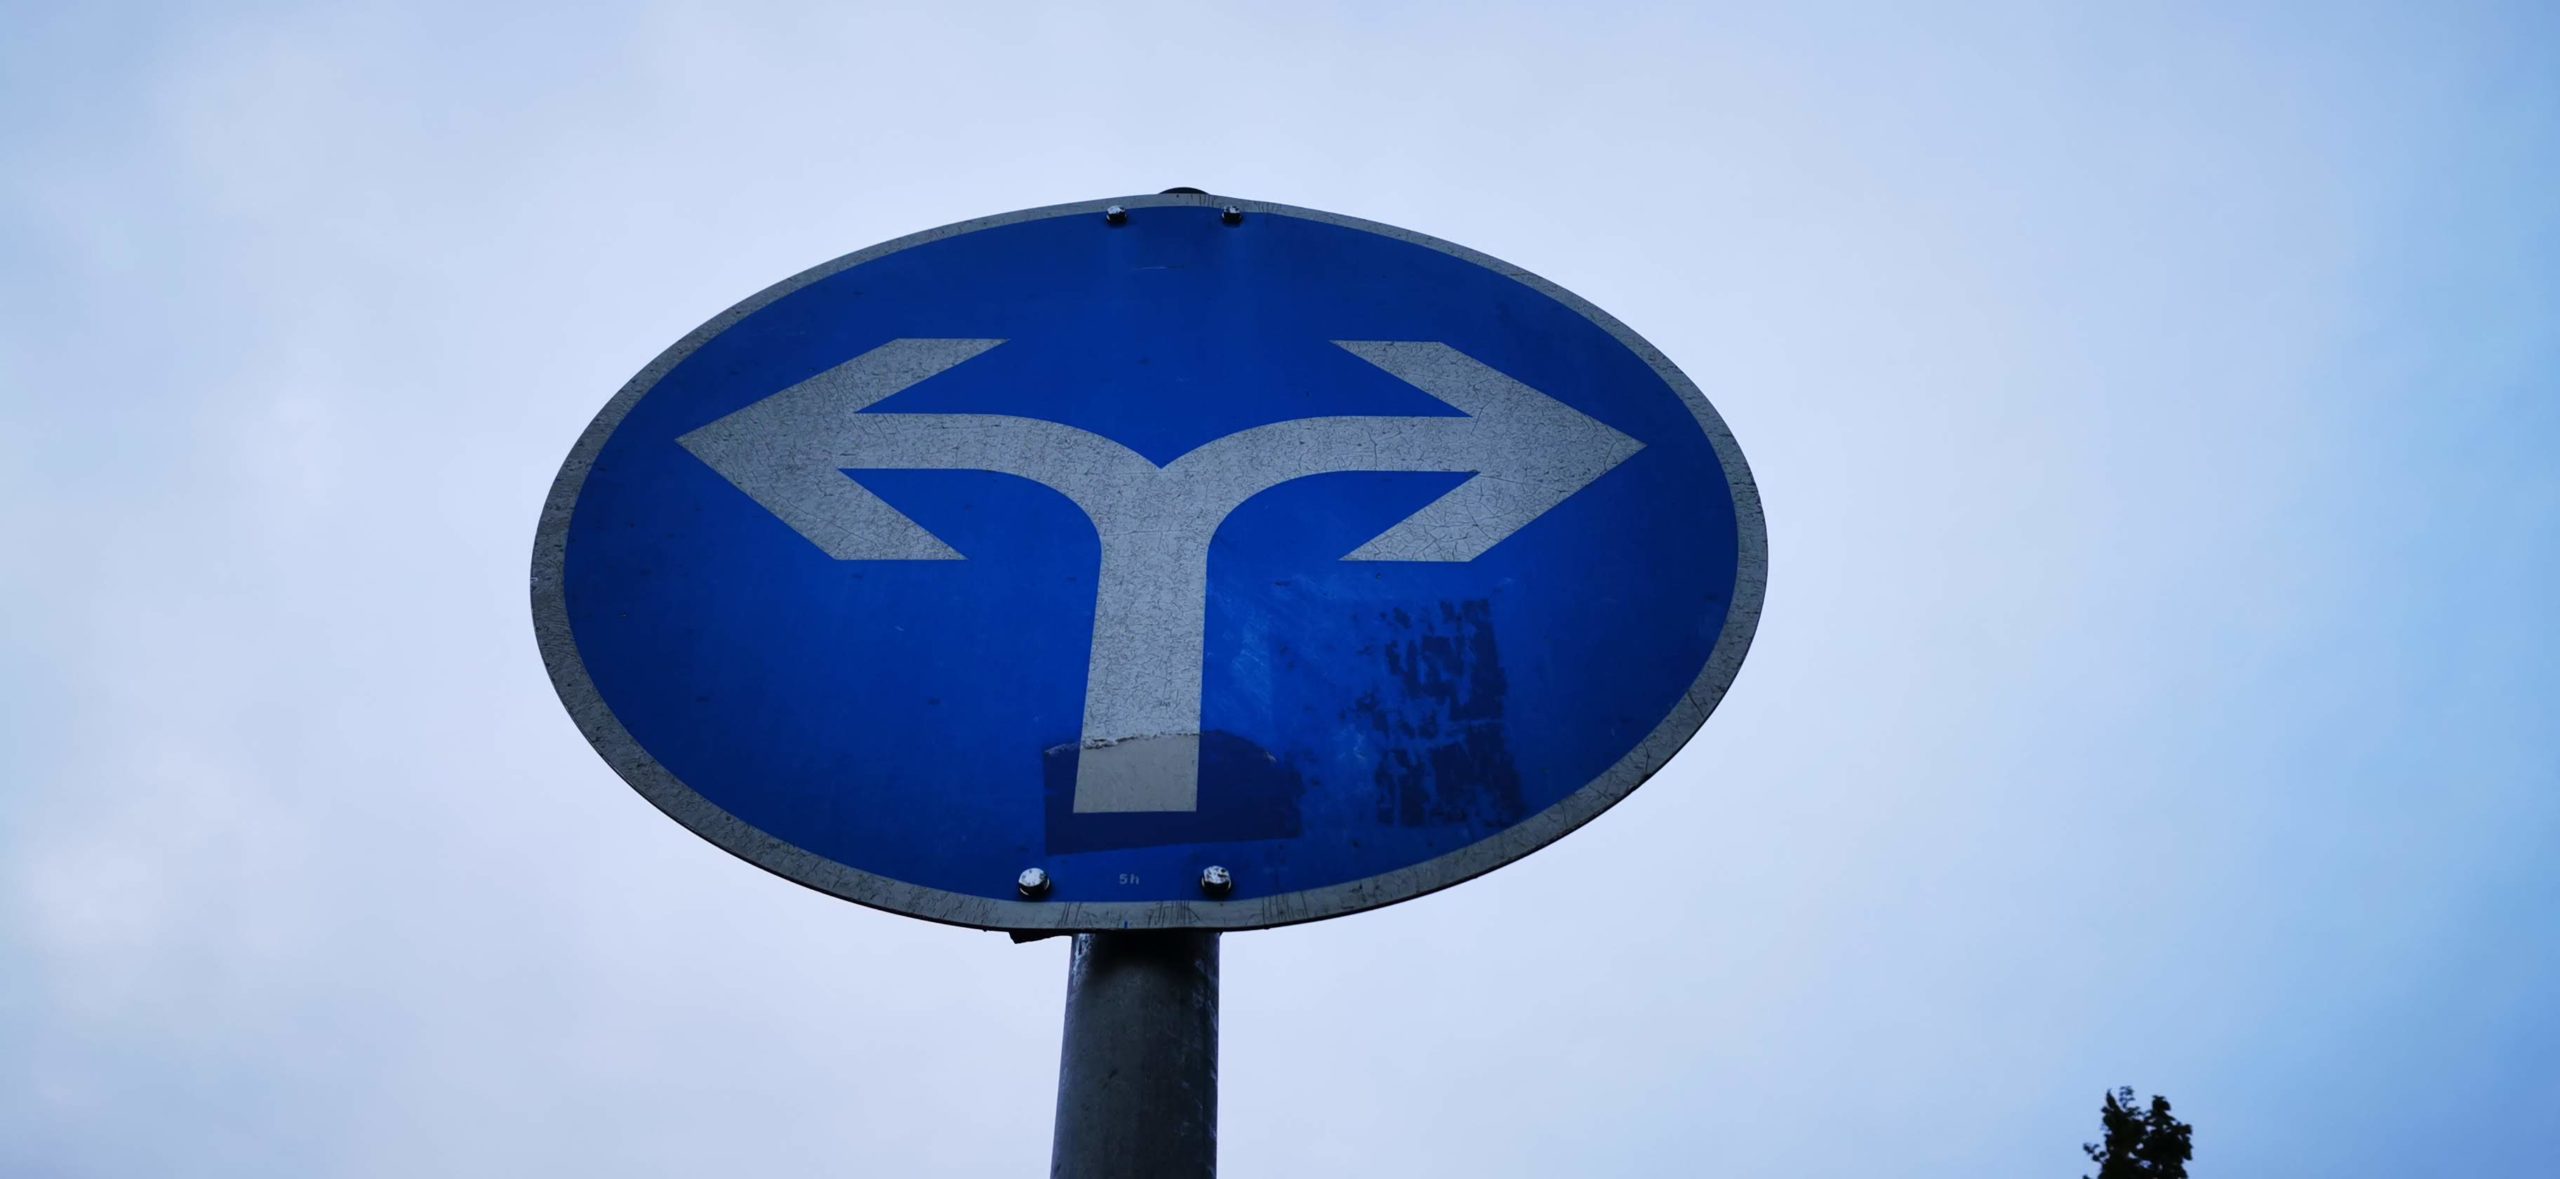 Bild zeigt ein Verkehrszeichen mit zwei Zwangspfeilen nach Links und Rechts